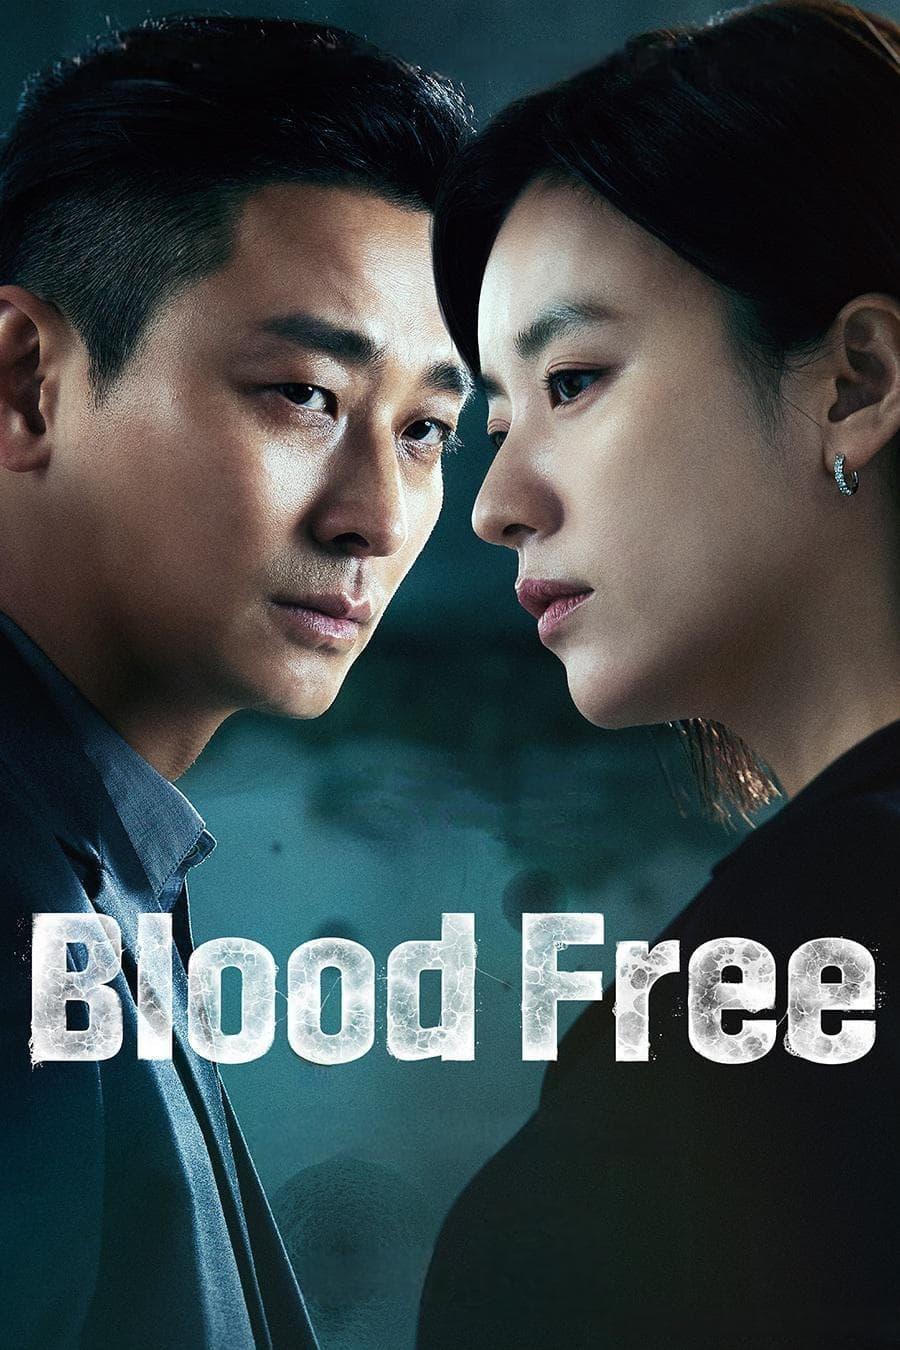 Blood Free poster